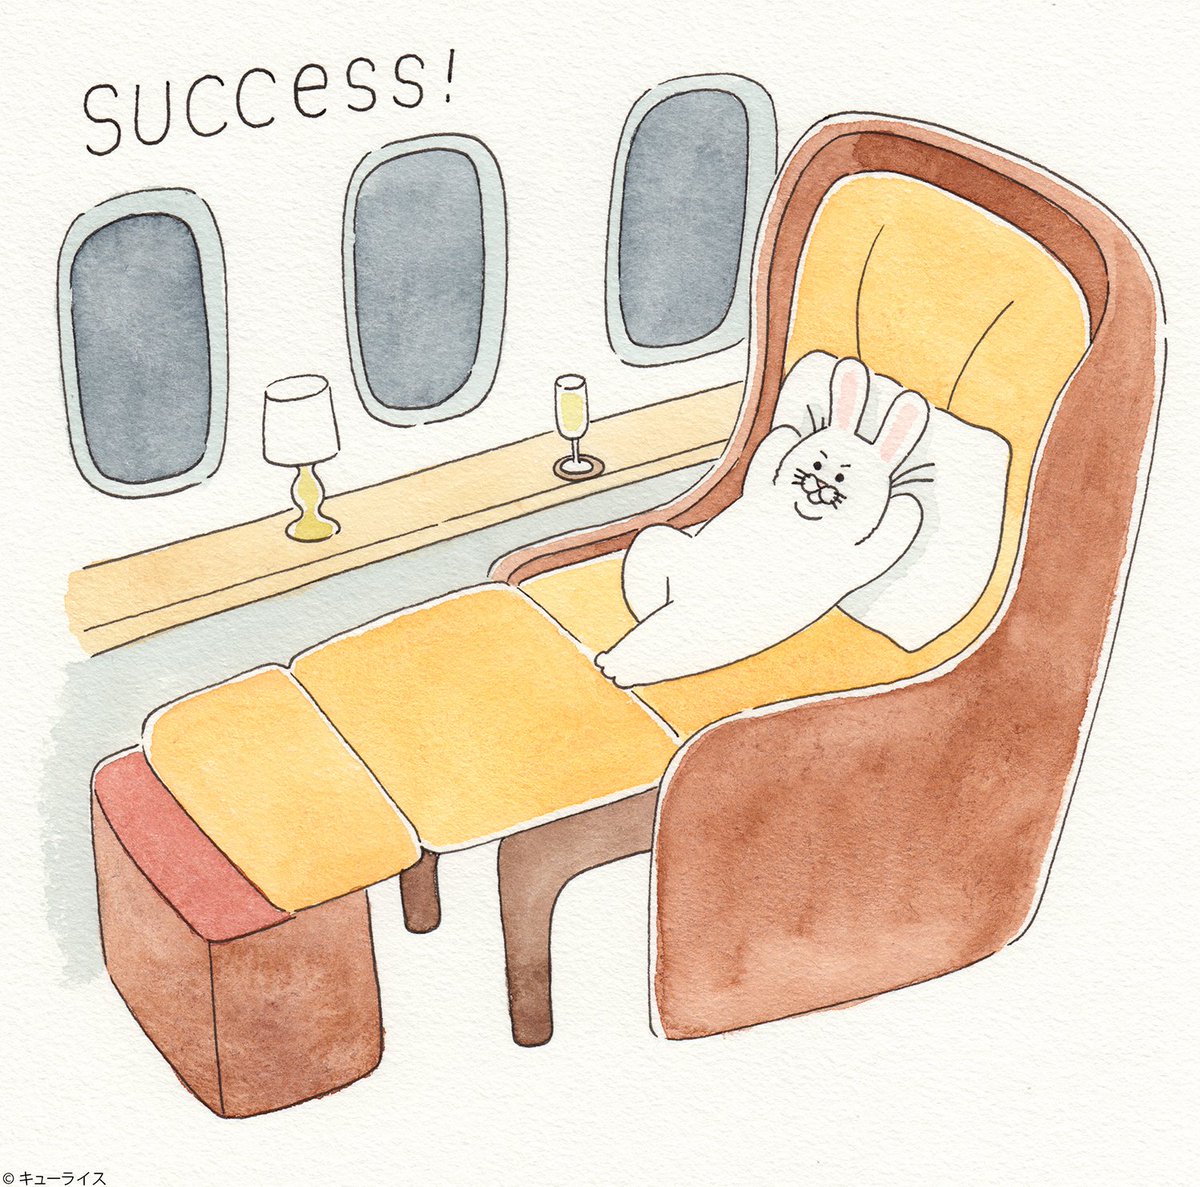 4コマ漫画ネコノヒー「飛行機の夜」/Night of the airplane　https://t.co/X4HEA1kvYR　　　4月27日単行本「ネコノヒー2」発売→ 